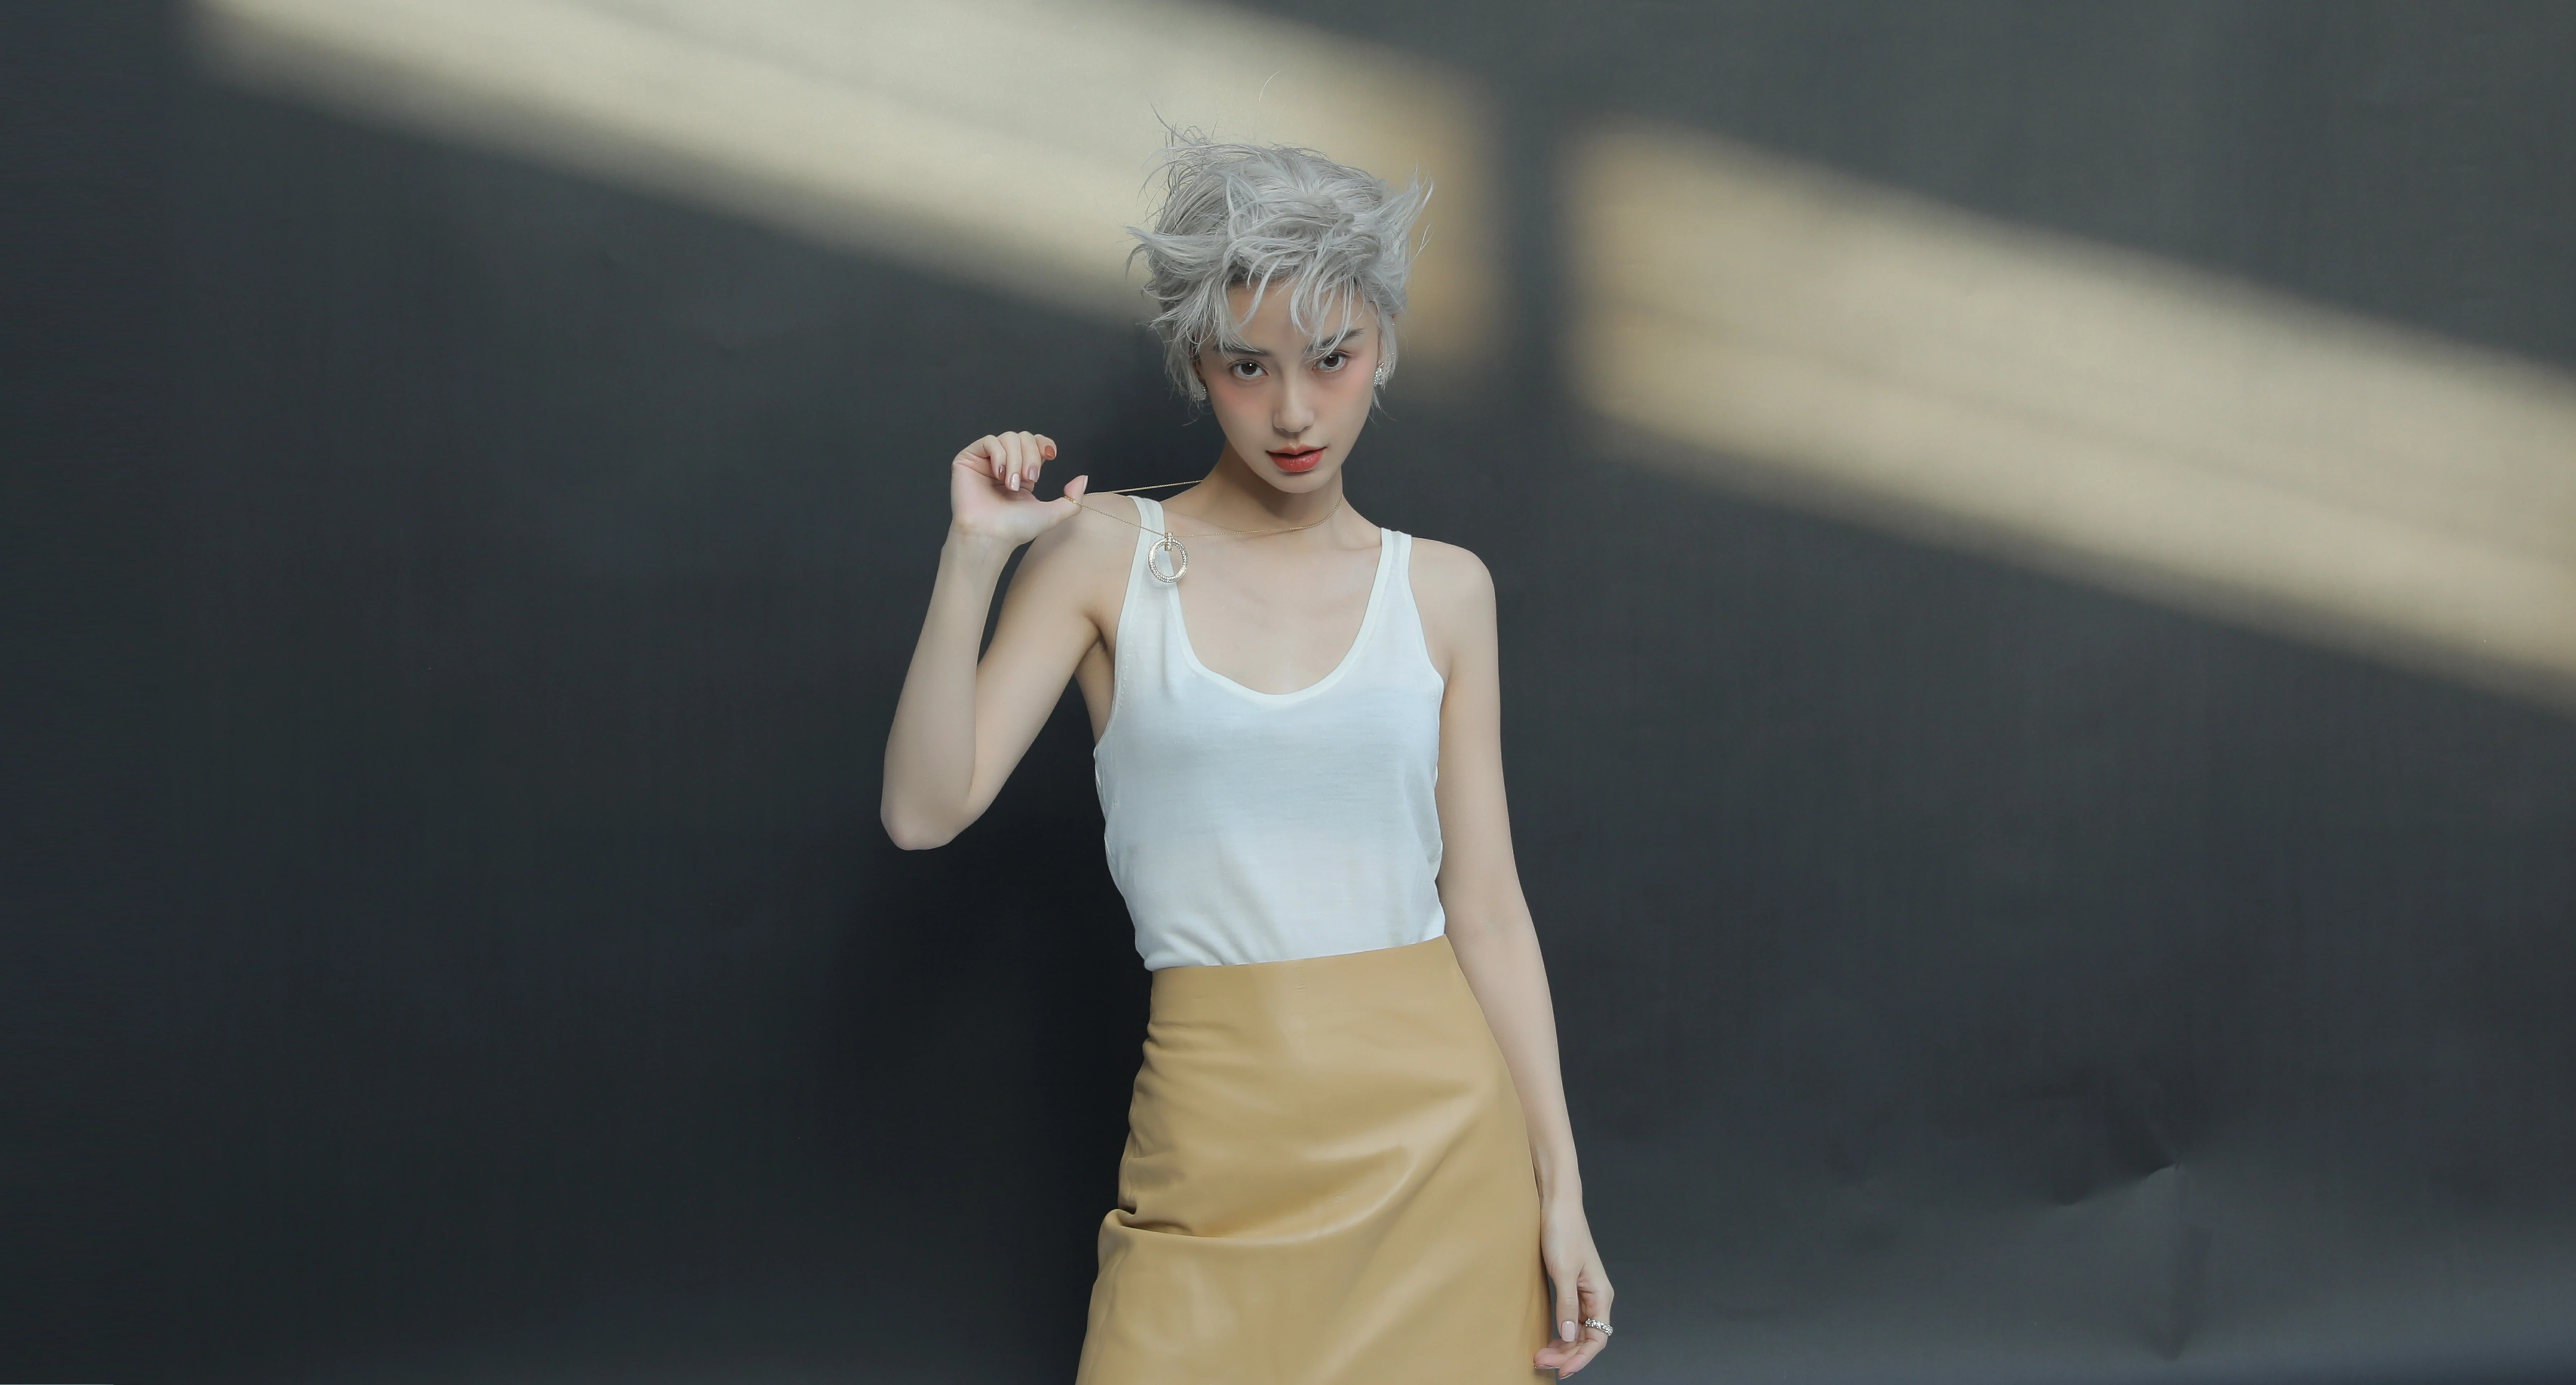 杨颖（Angelababy）银色短发造型大片酷飒前卫 妆容精致撕漫感满满,6